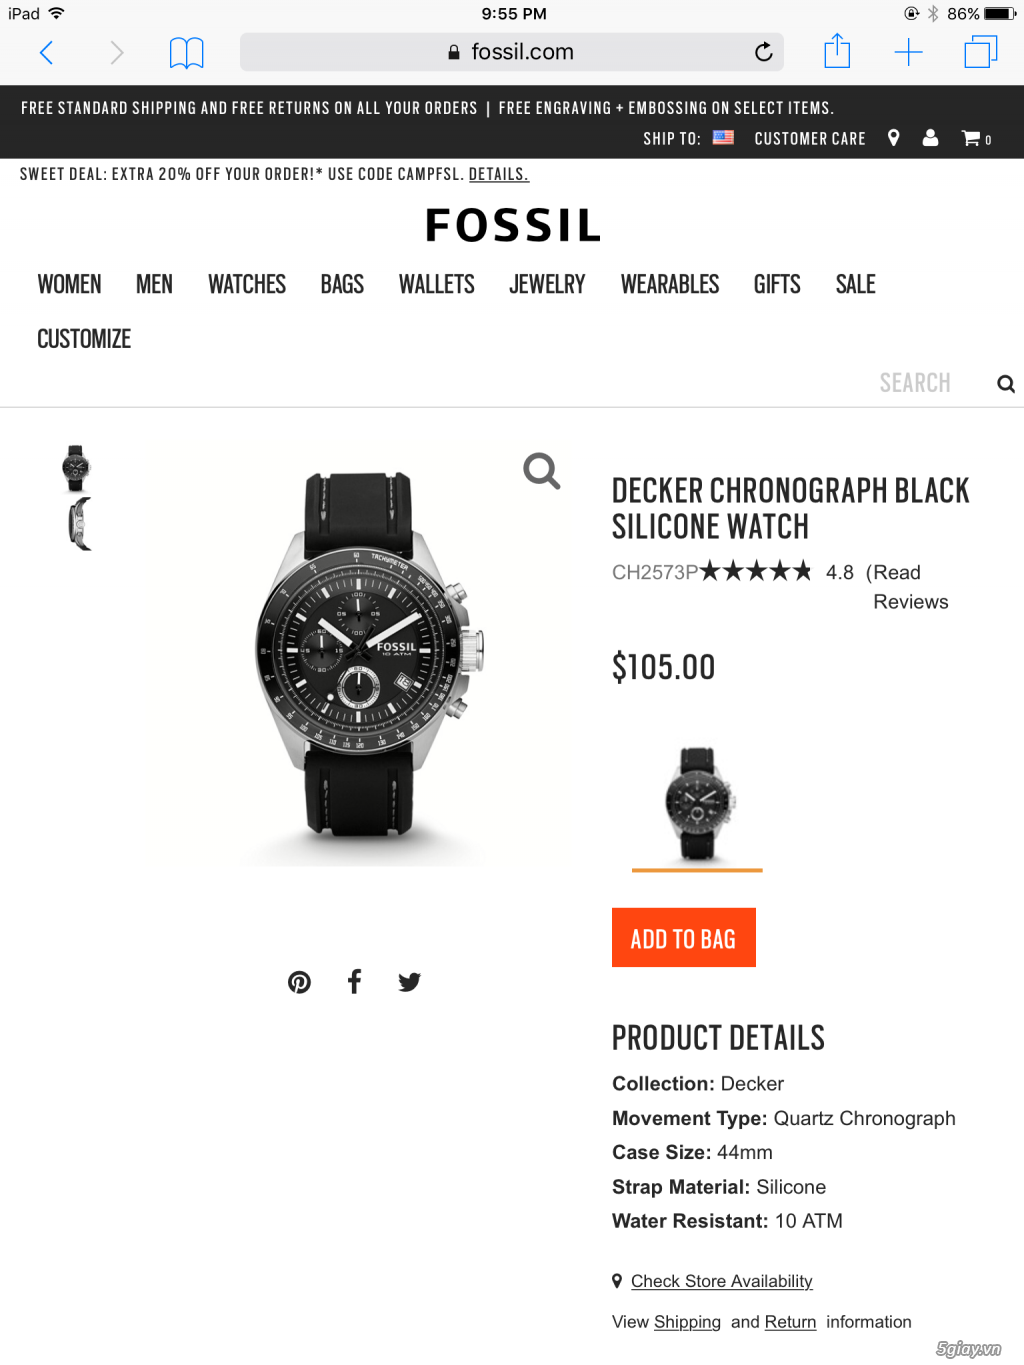 Chuyên Fossil Watch, Xem hình, nhìn giá, và gọi ngay cho em ah. Hàng có sẳn +freeship - 3